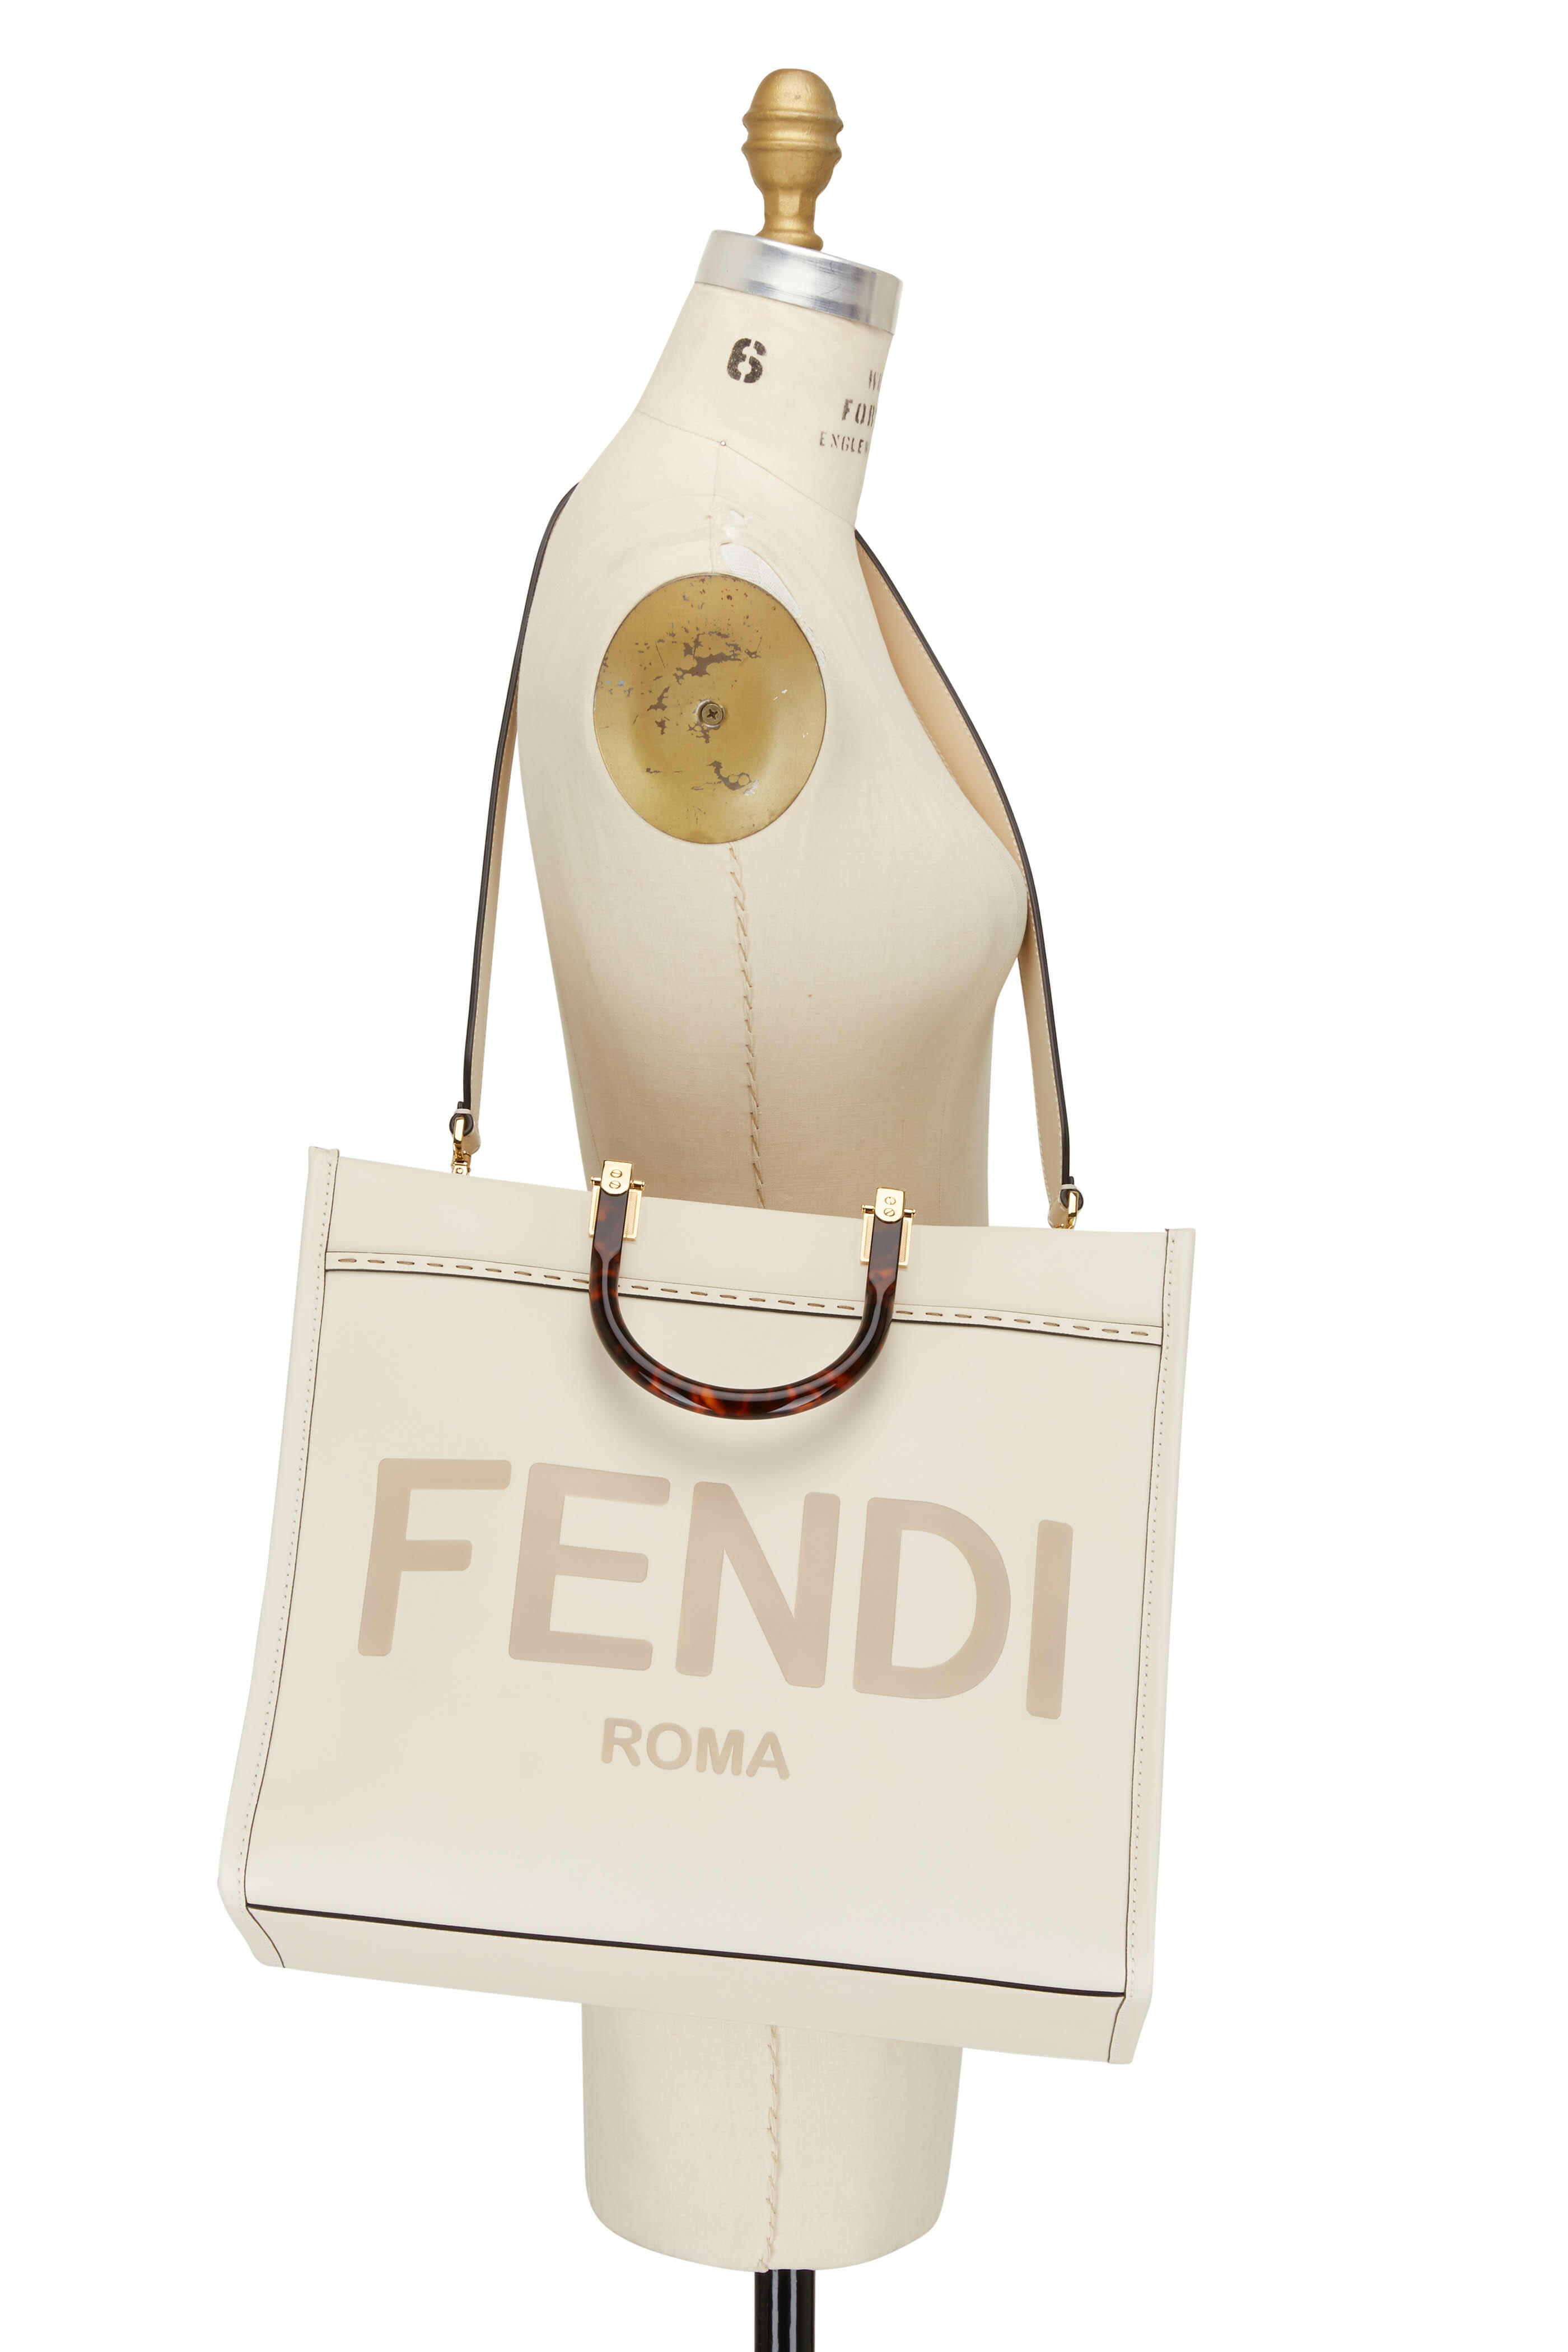 FENDI: leather shopping bag with big Roma logo - White